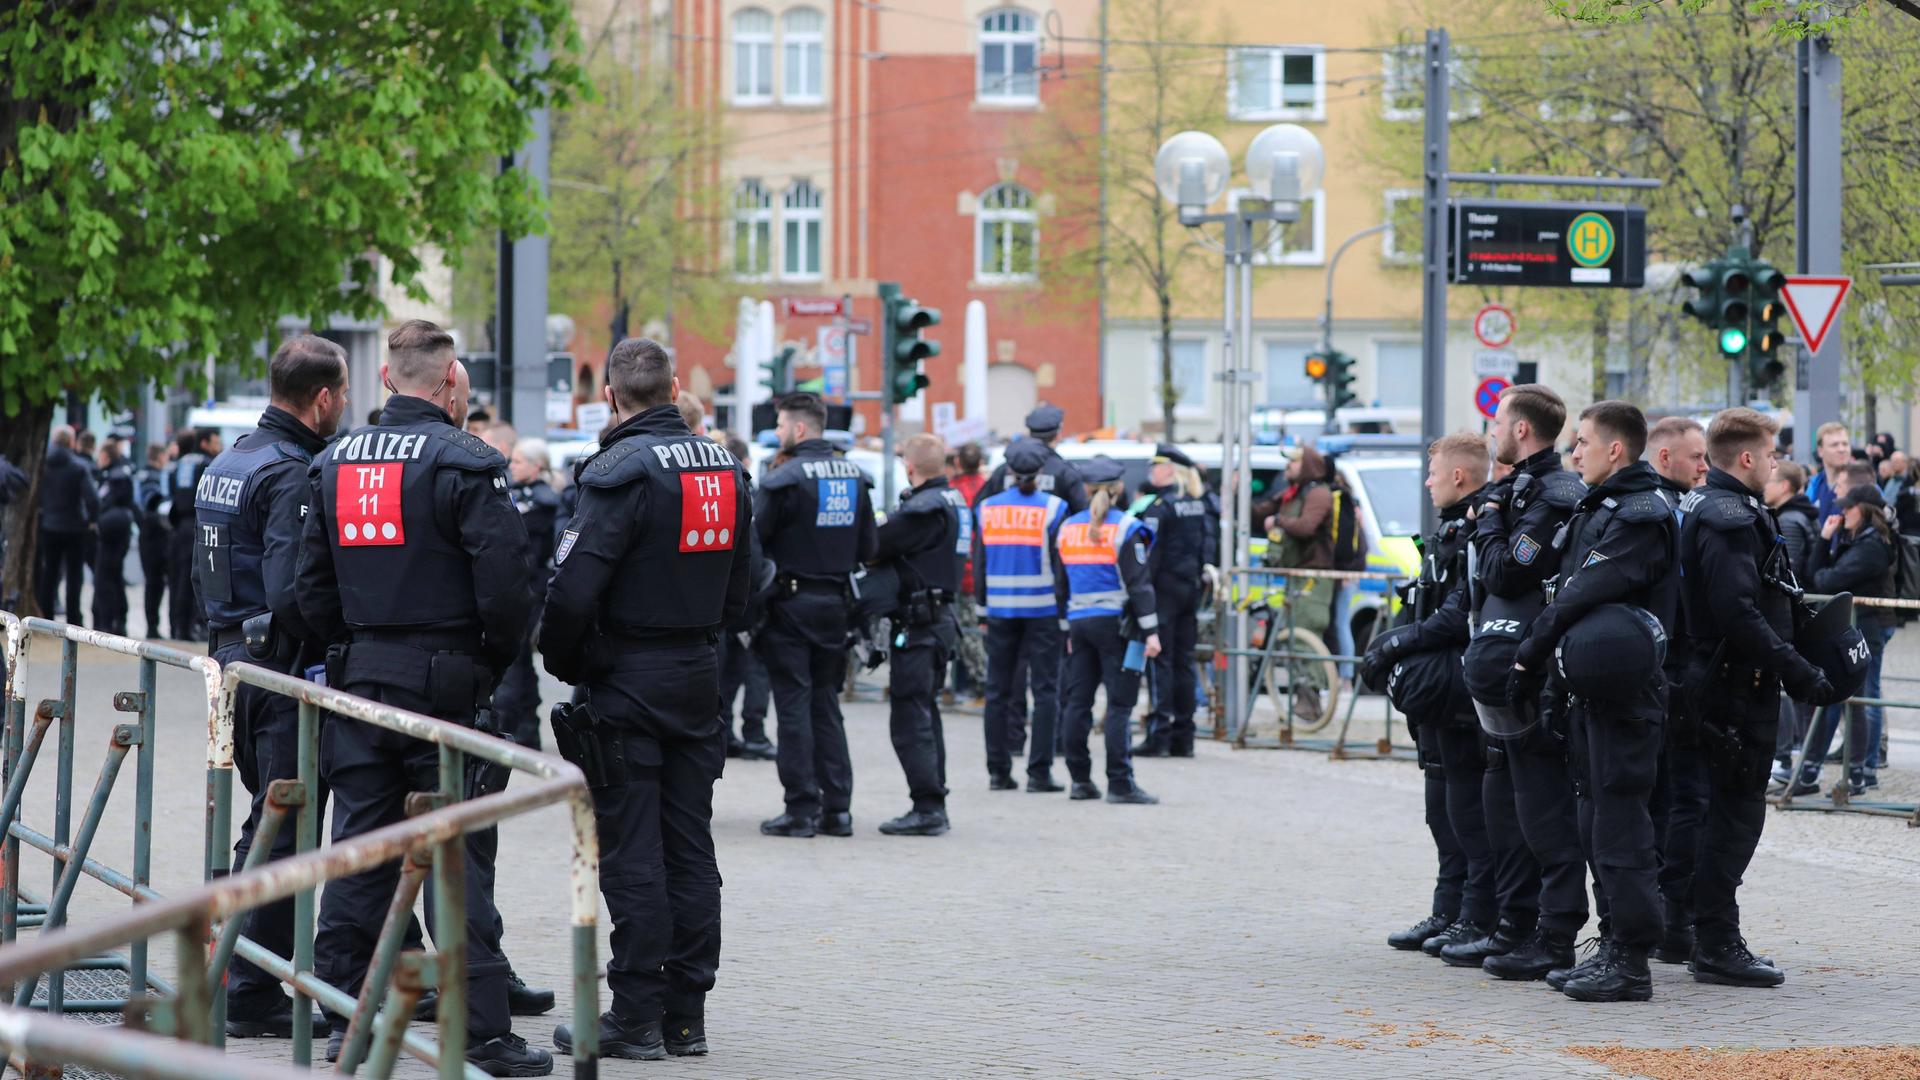 Kundgebung der AfD in Erfurt - Polizisten sichern strategisch das Gelände zwischen Kundgebung und Gegenprotest ab